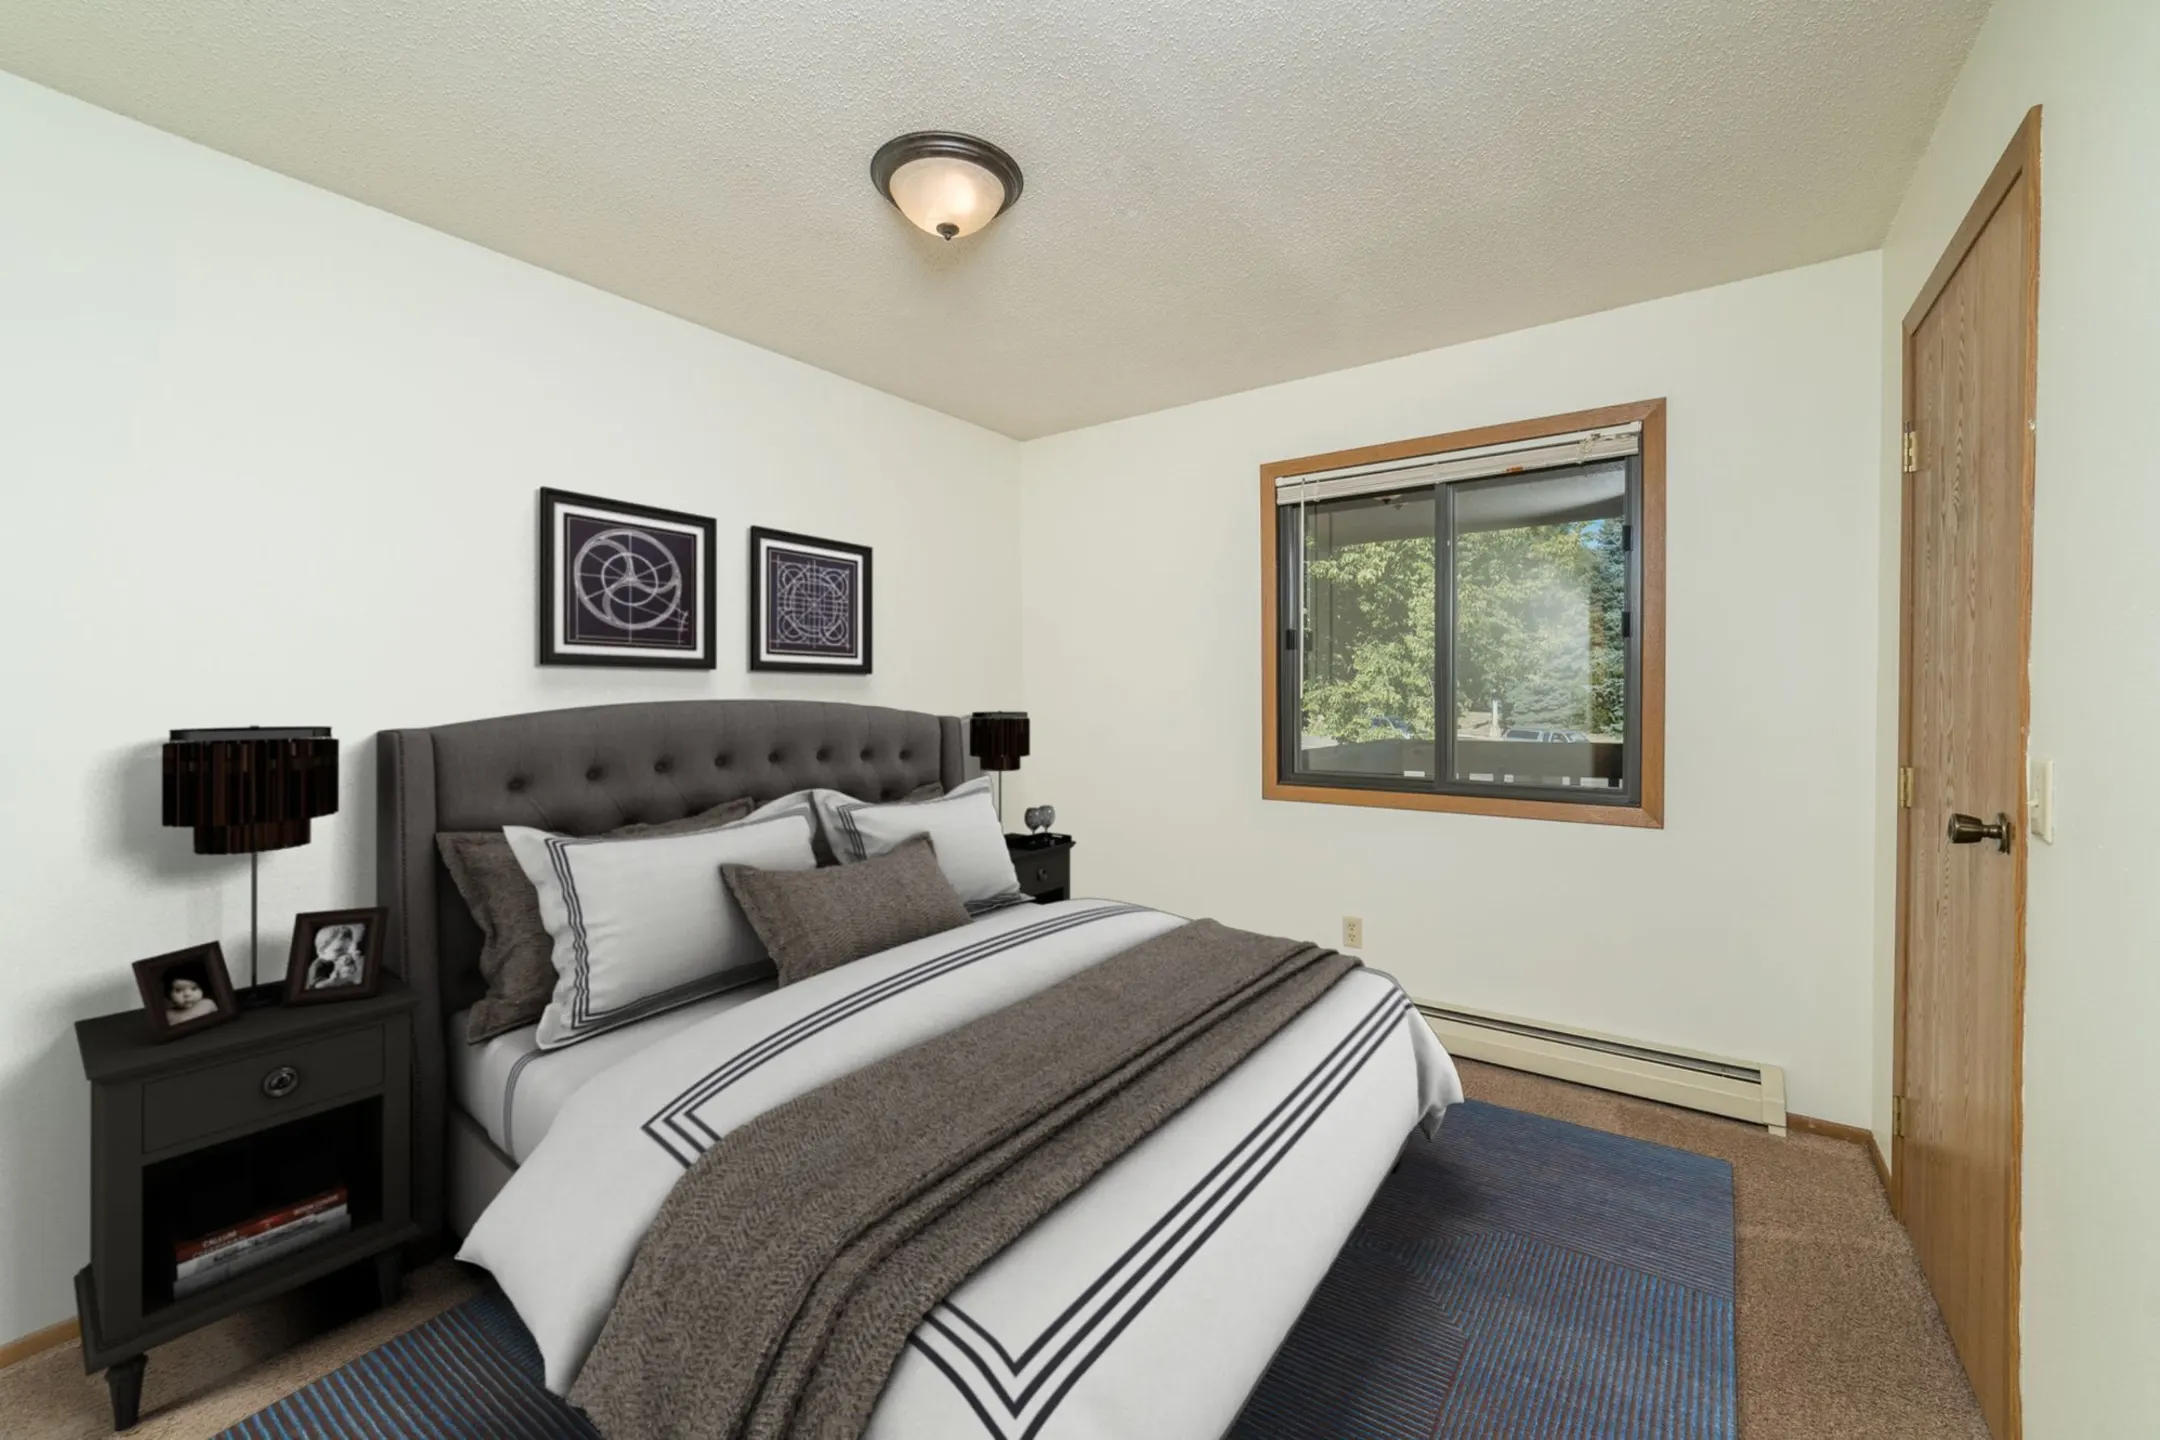 Bedroom - Terrace Hills Apartments - Sioux Falls, SD